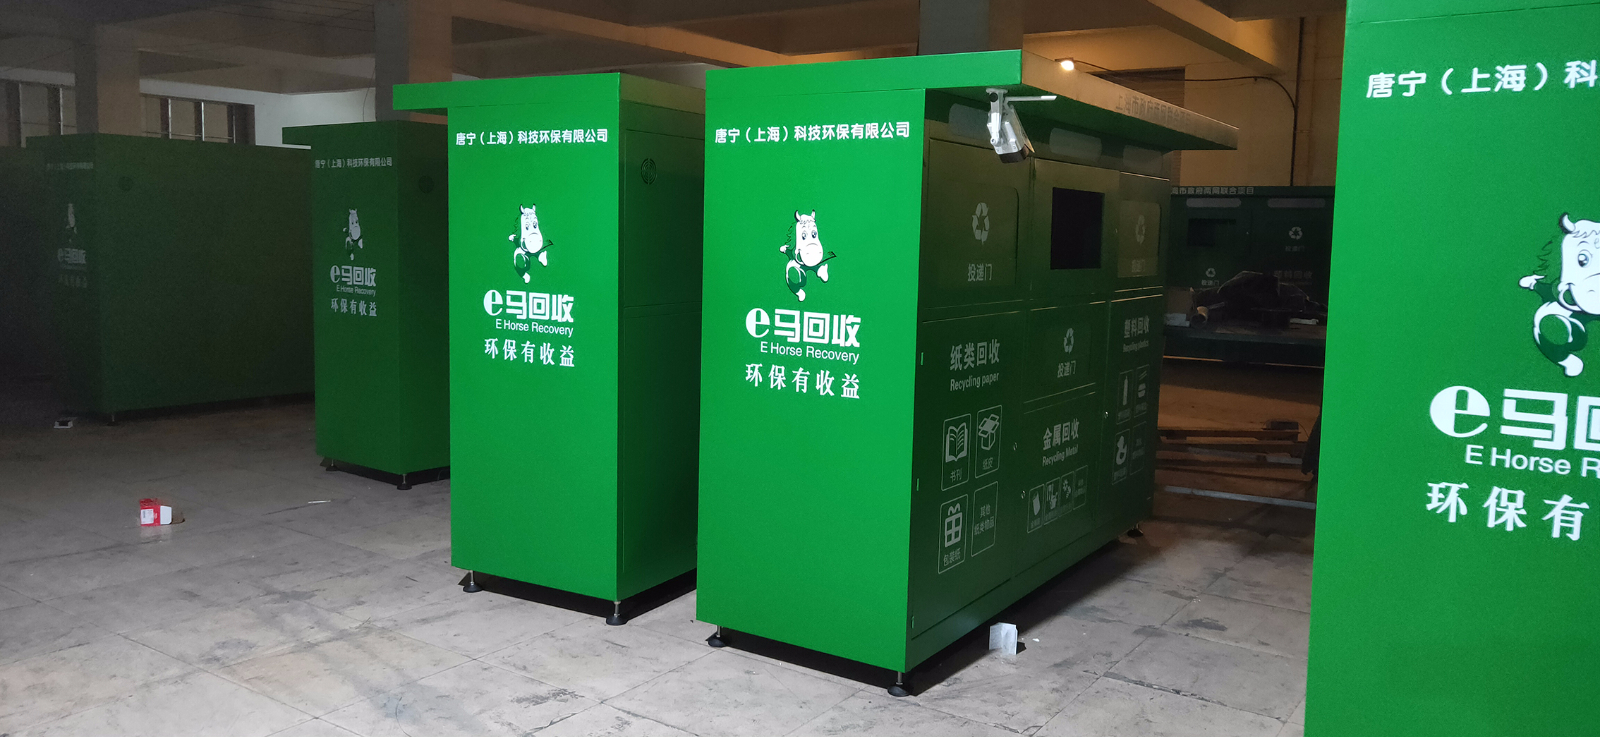 上海智能垃圾分类亭第二批发货2020.5